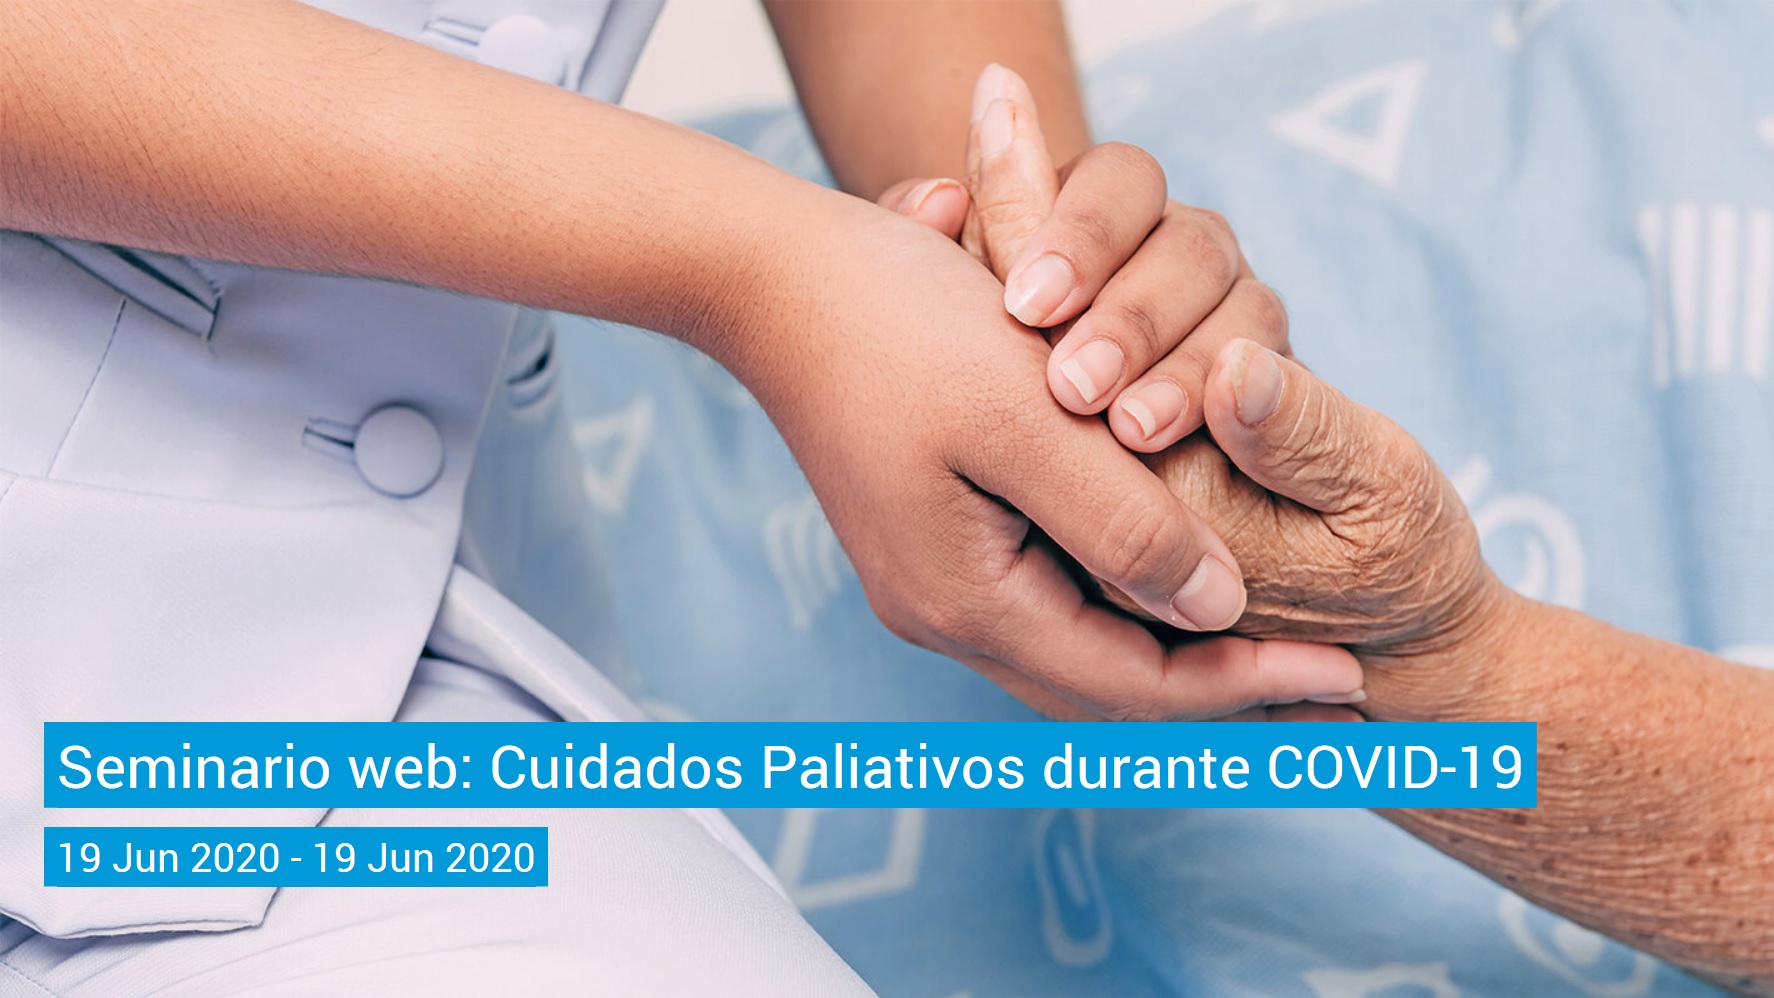 OPAS/OMS realizam Webinar sobre Cuidados Paliativos durante COVID-19